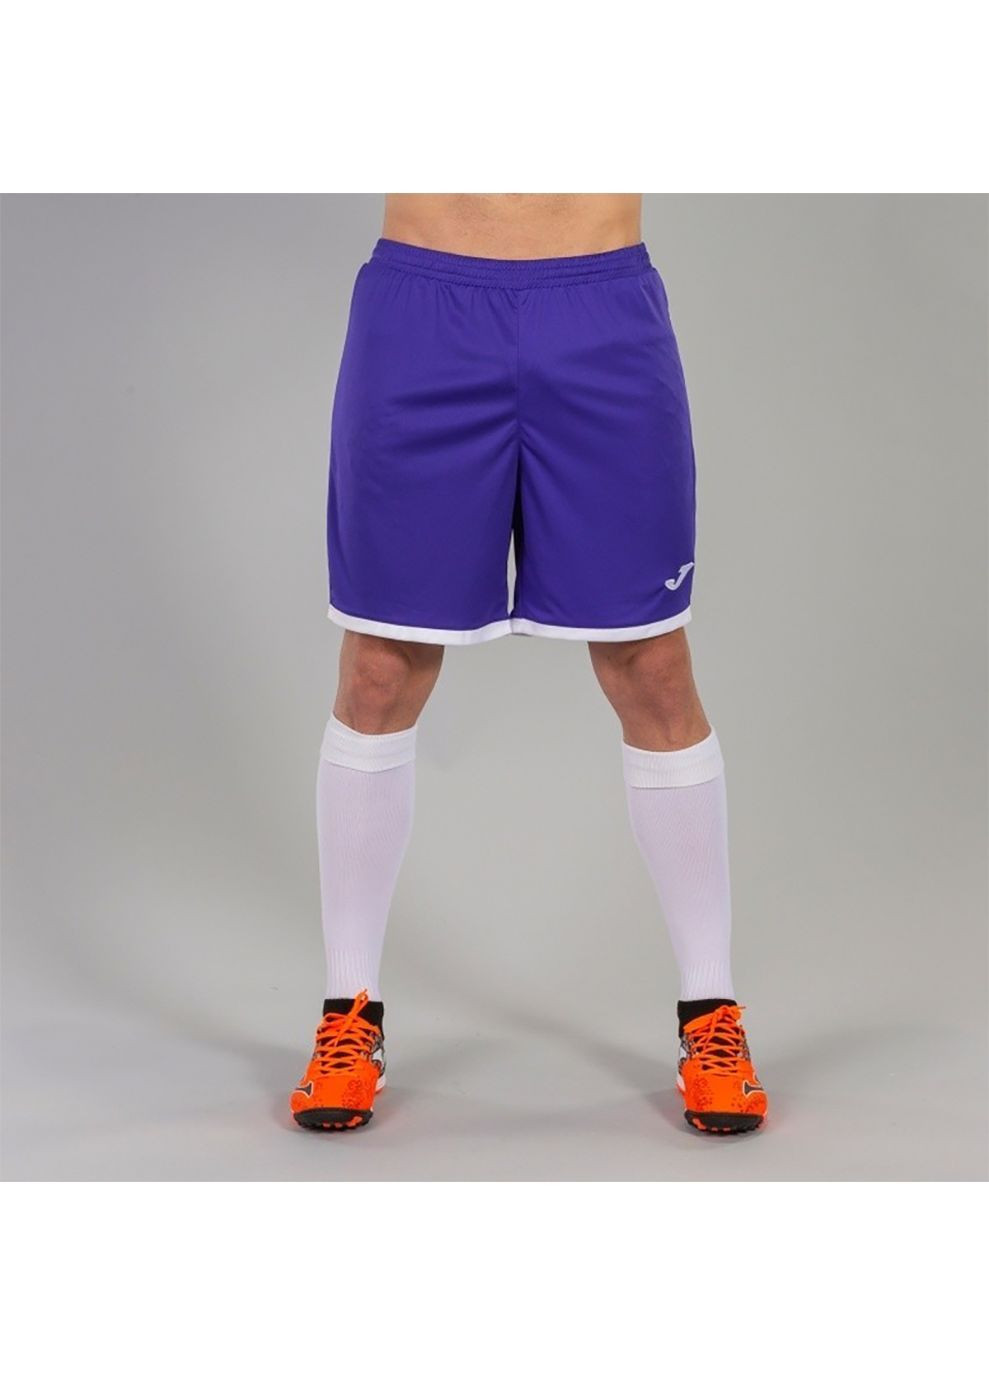 Мужские шорты TOLEDO фиолетовый Joma (282617391)